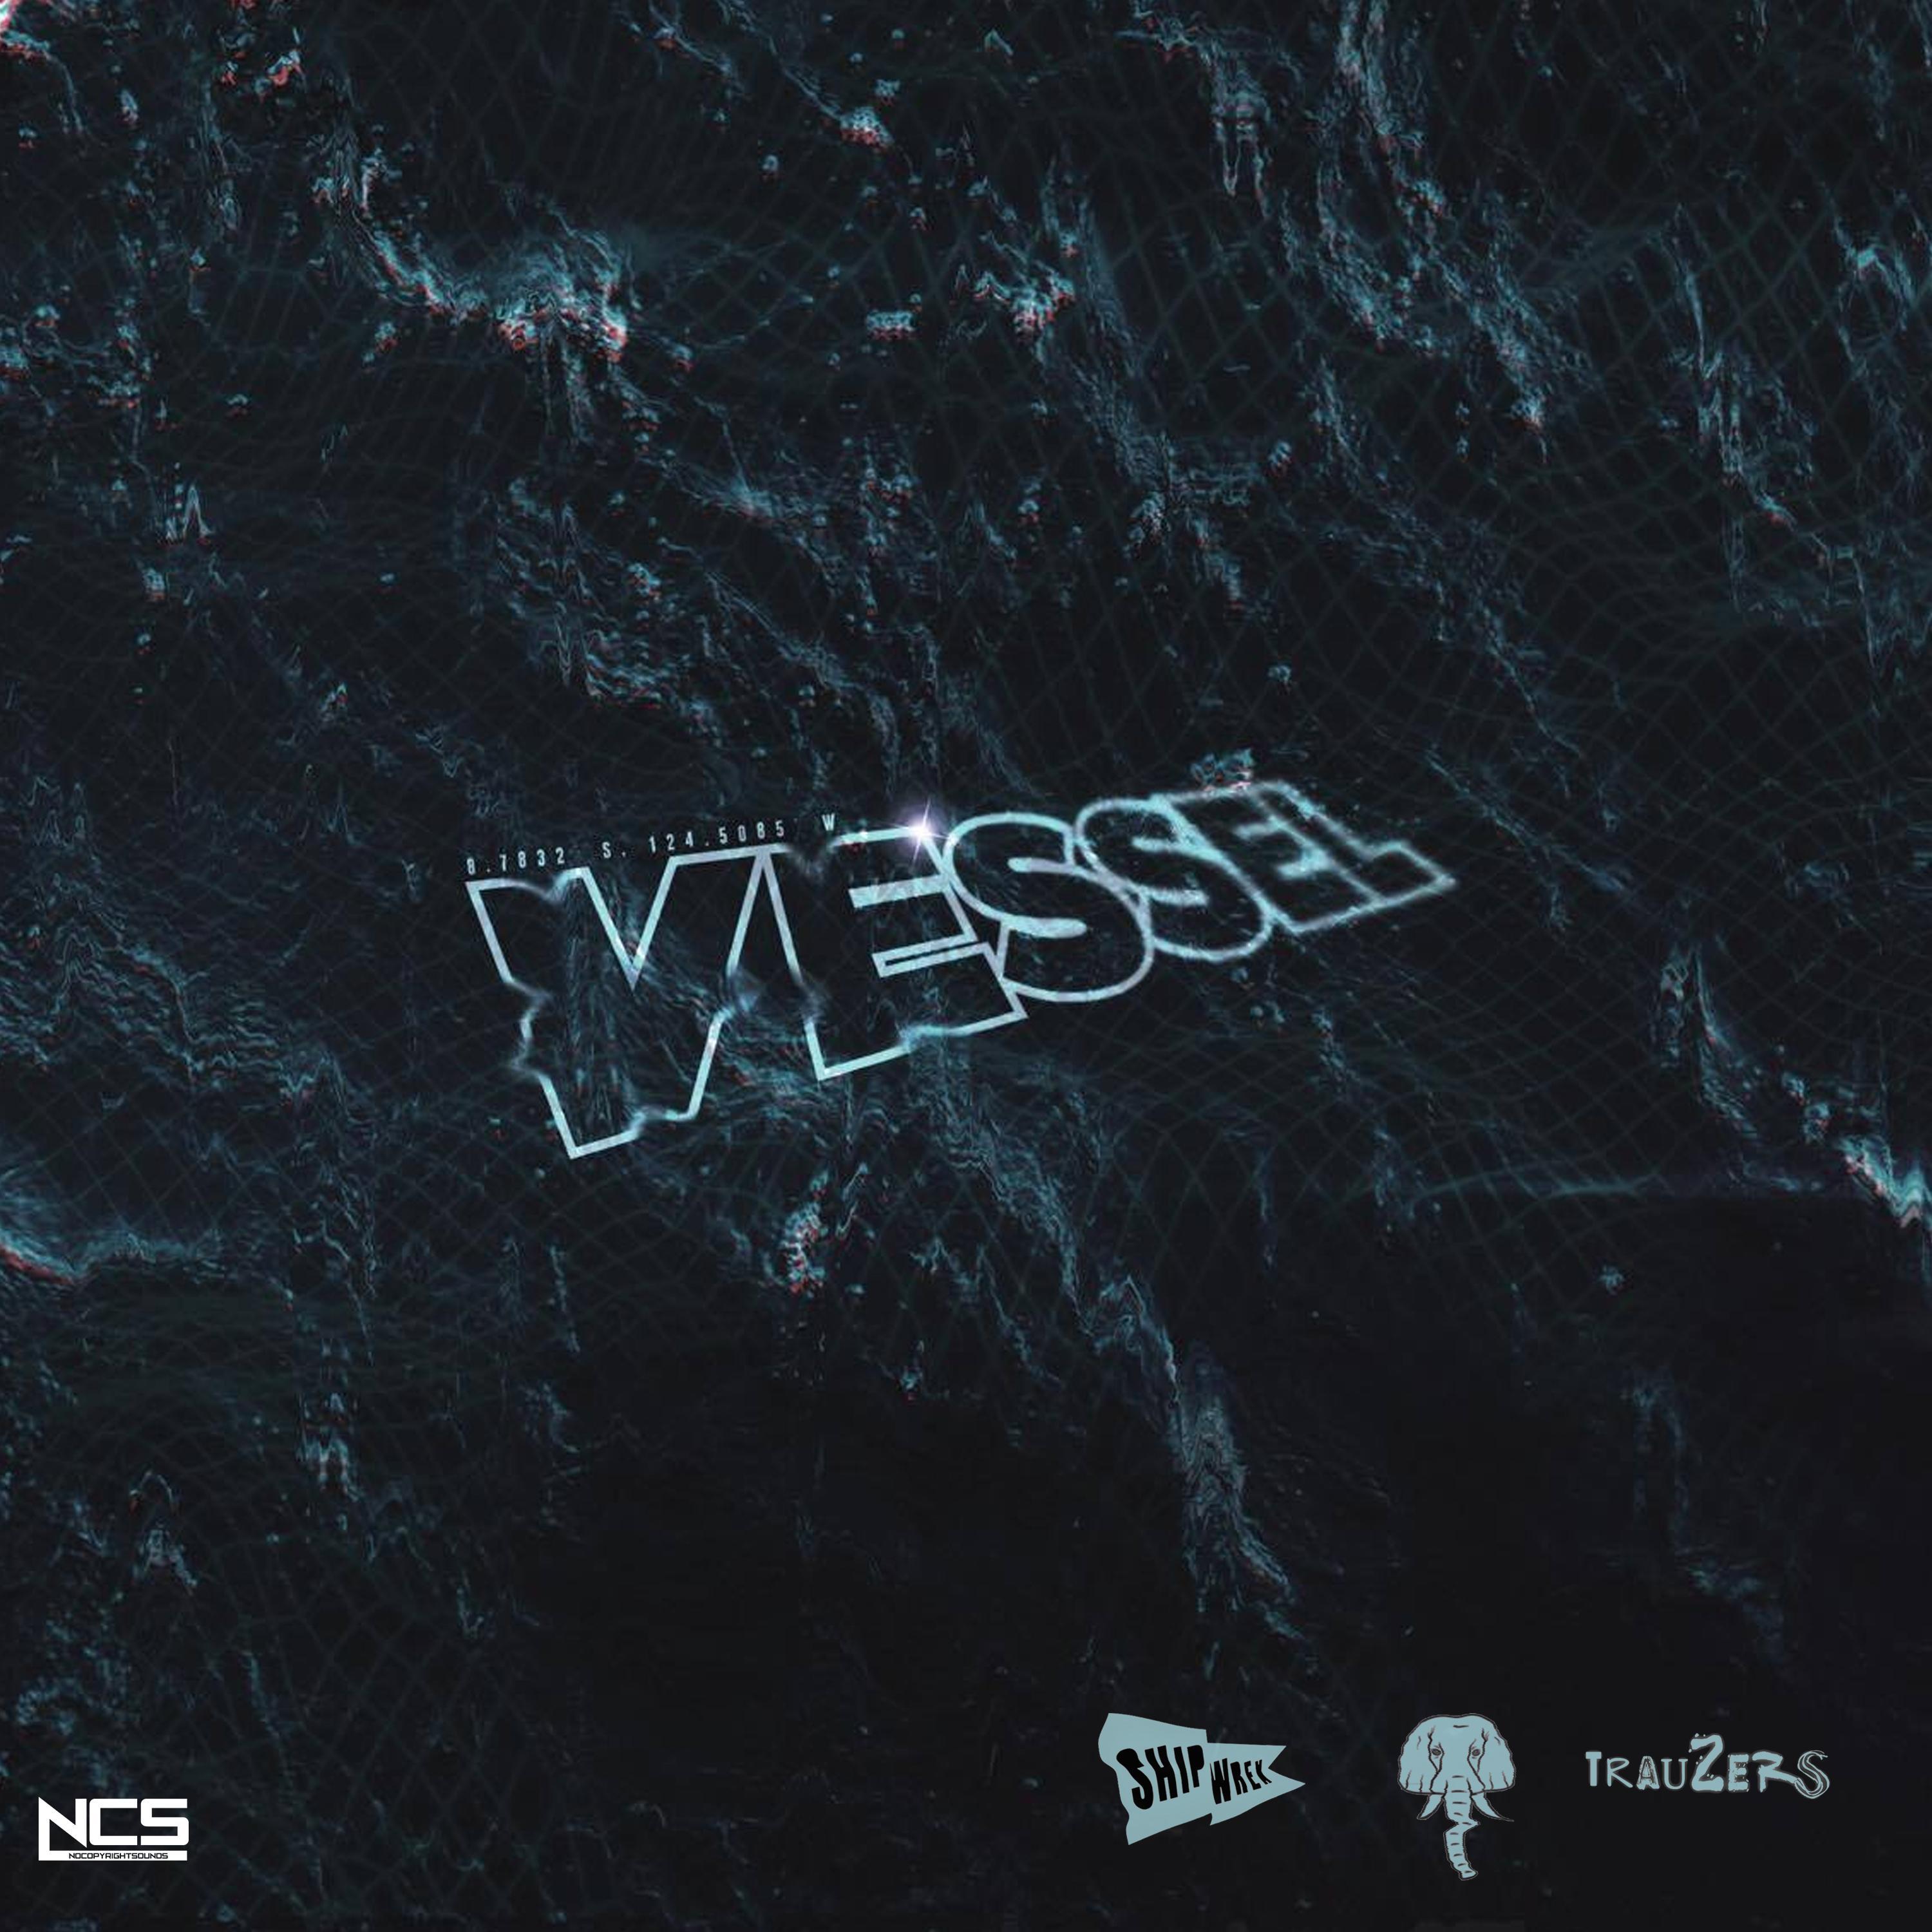 Vessel (Original Mix)